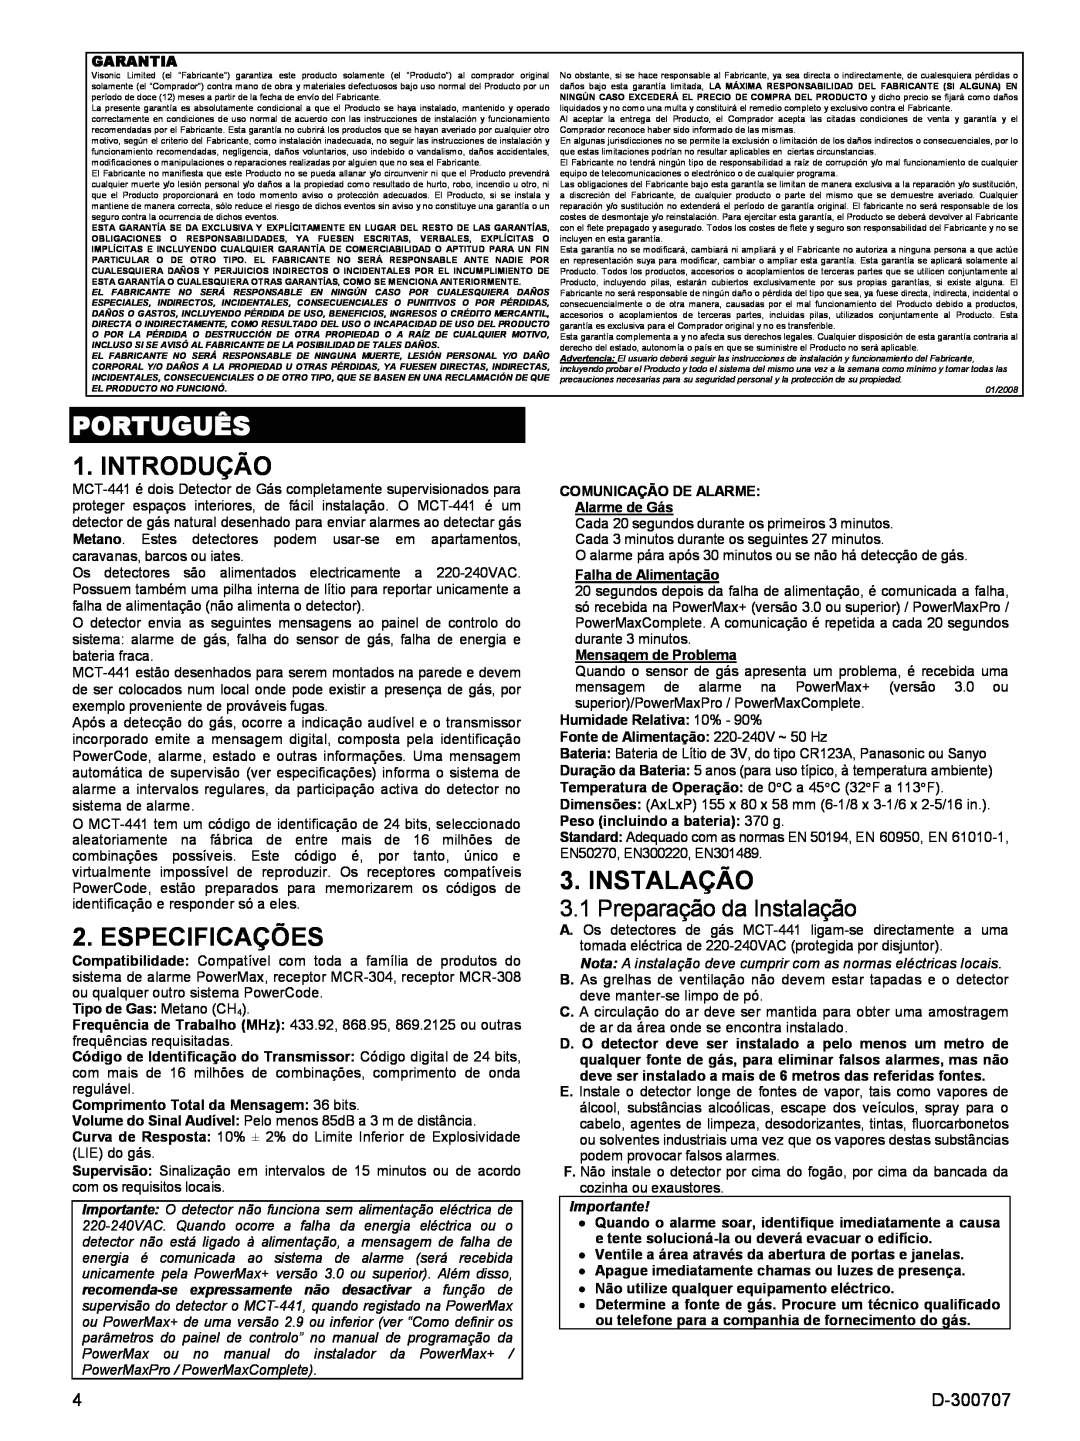 Visonik MCT-441 specifications Português, Introdução, Especificações, Preparação da Instalação, D-300707 